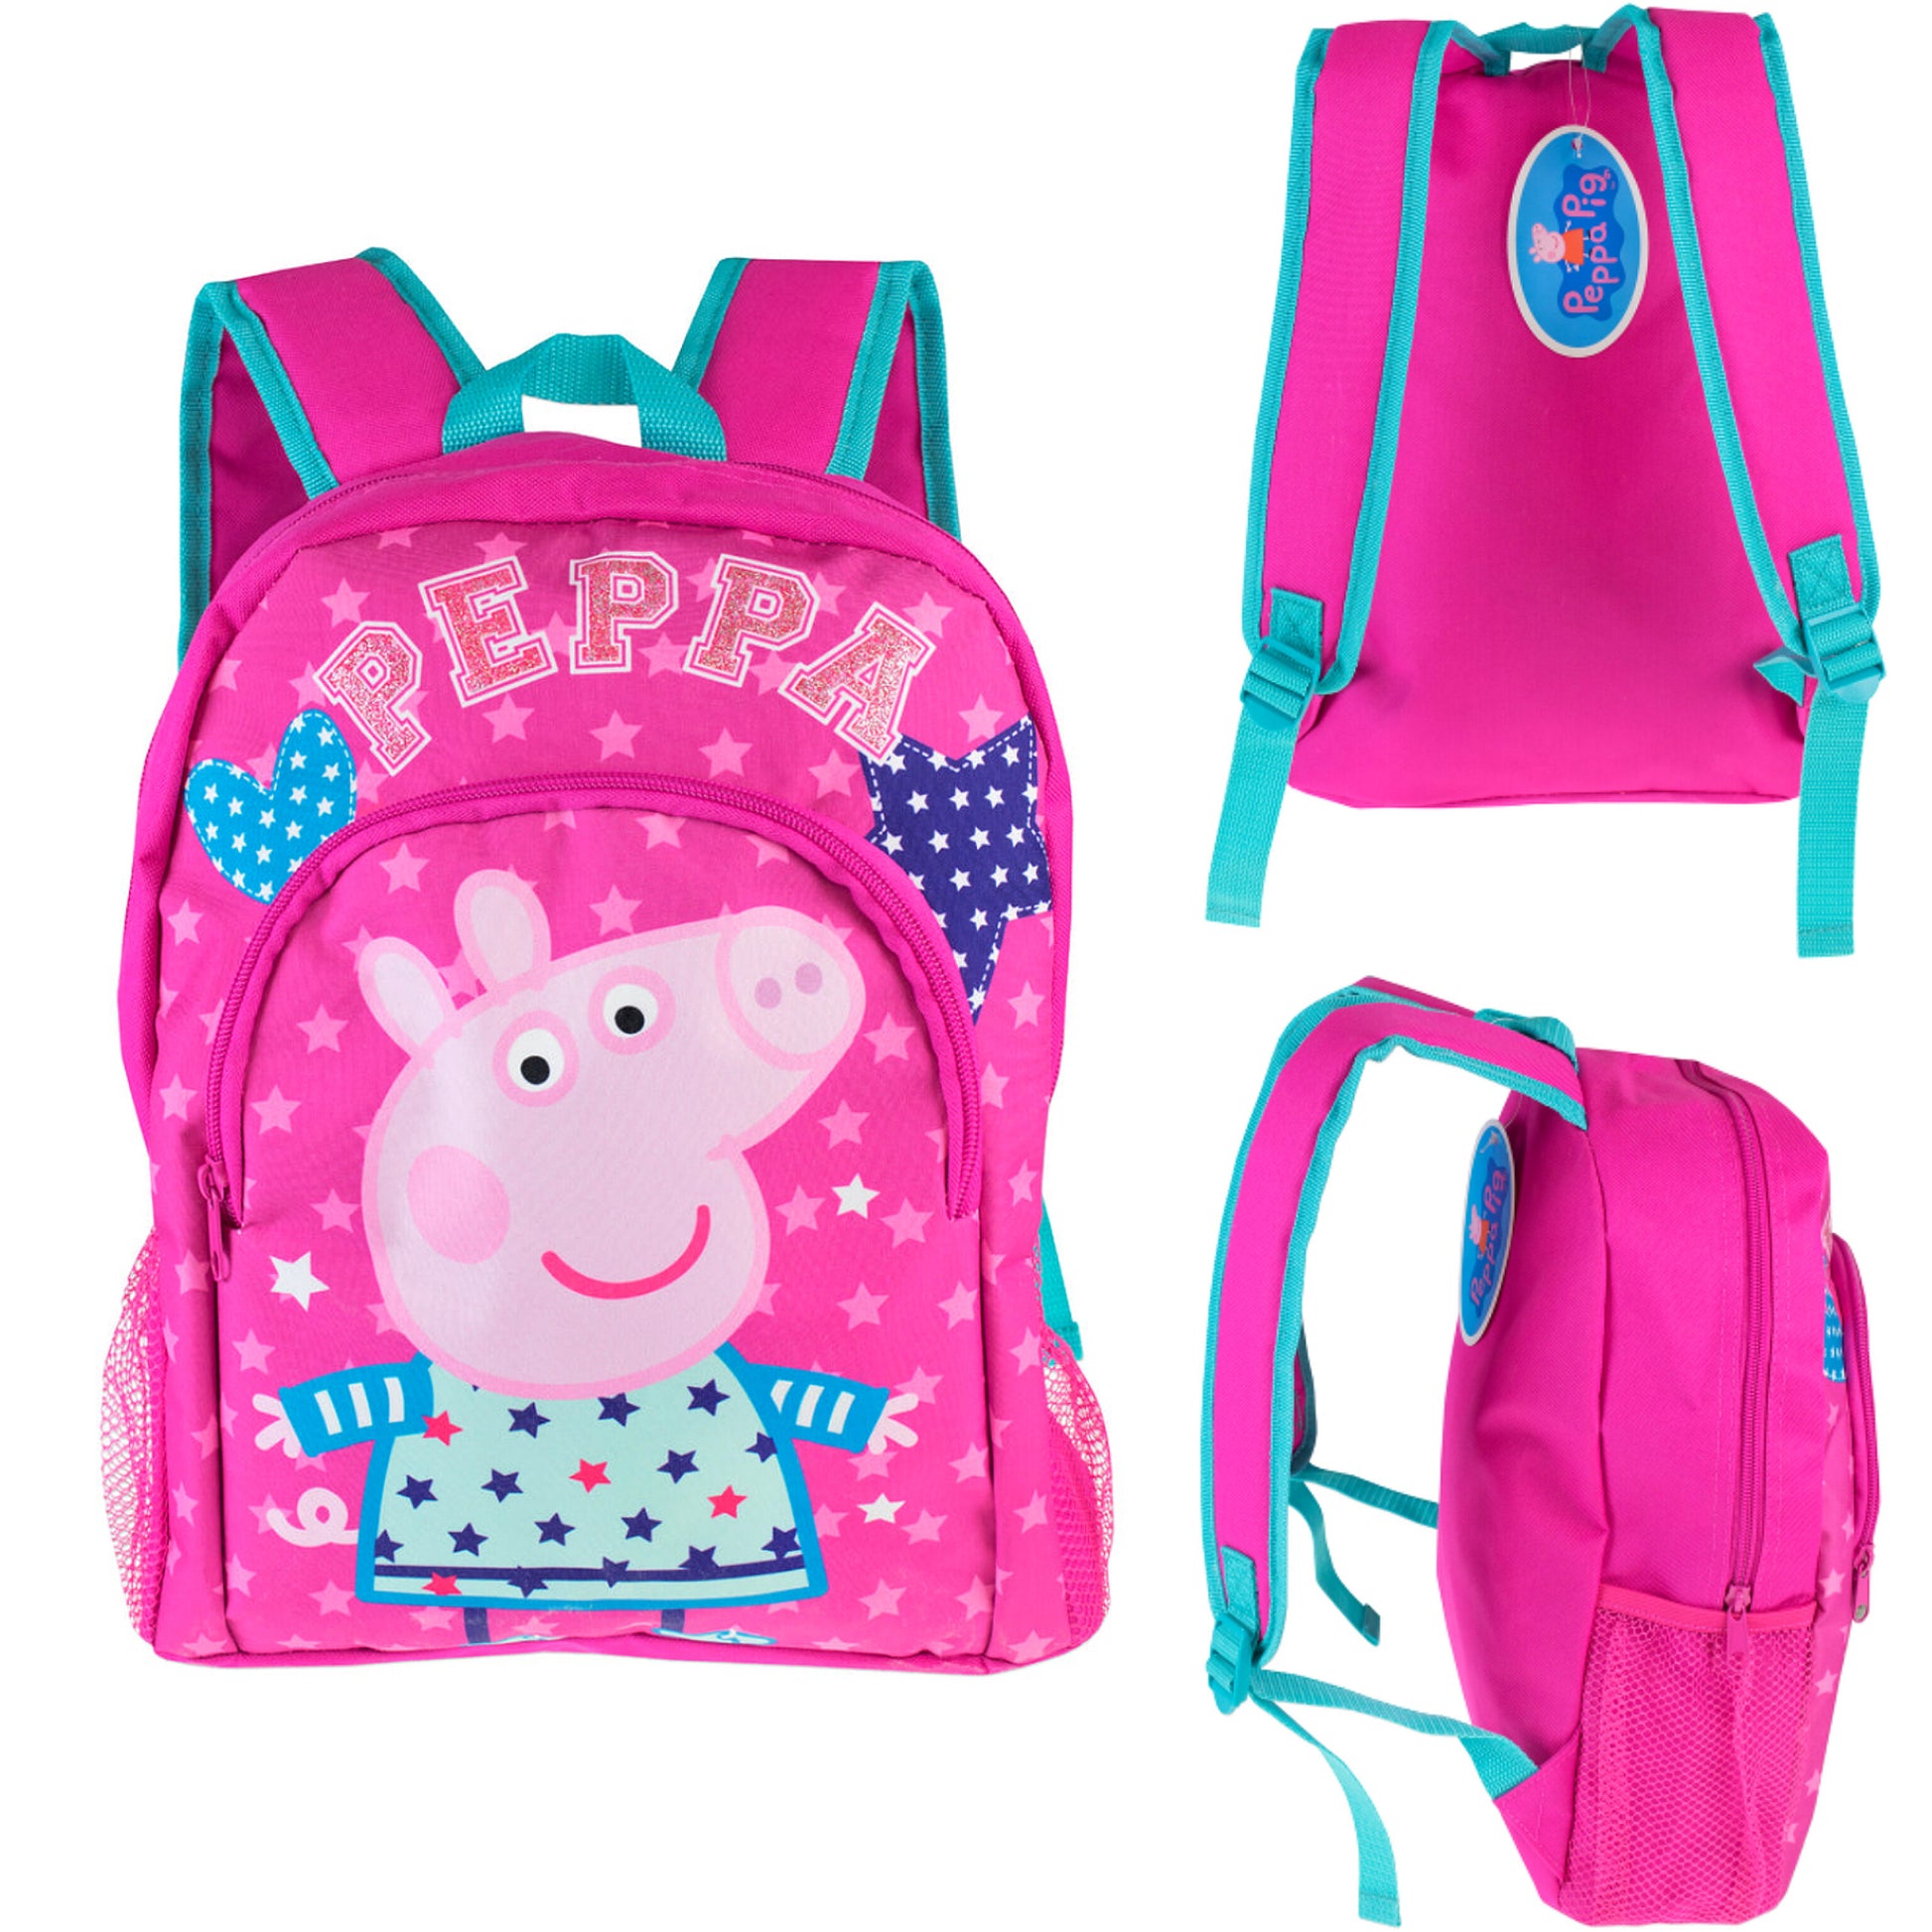 Peppa Pig Girls Backpack - Diaper Yard Gh